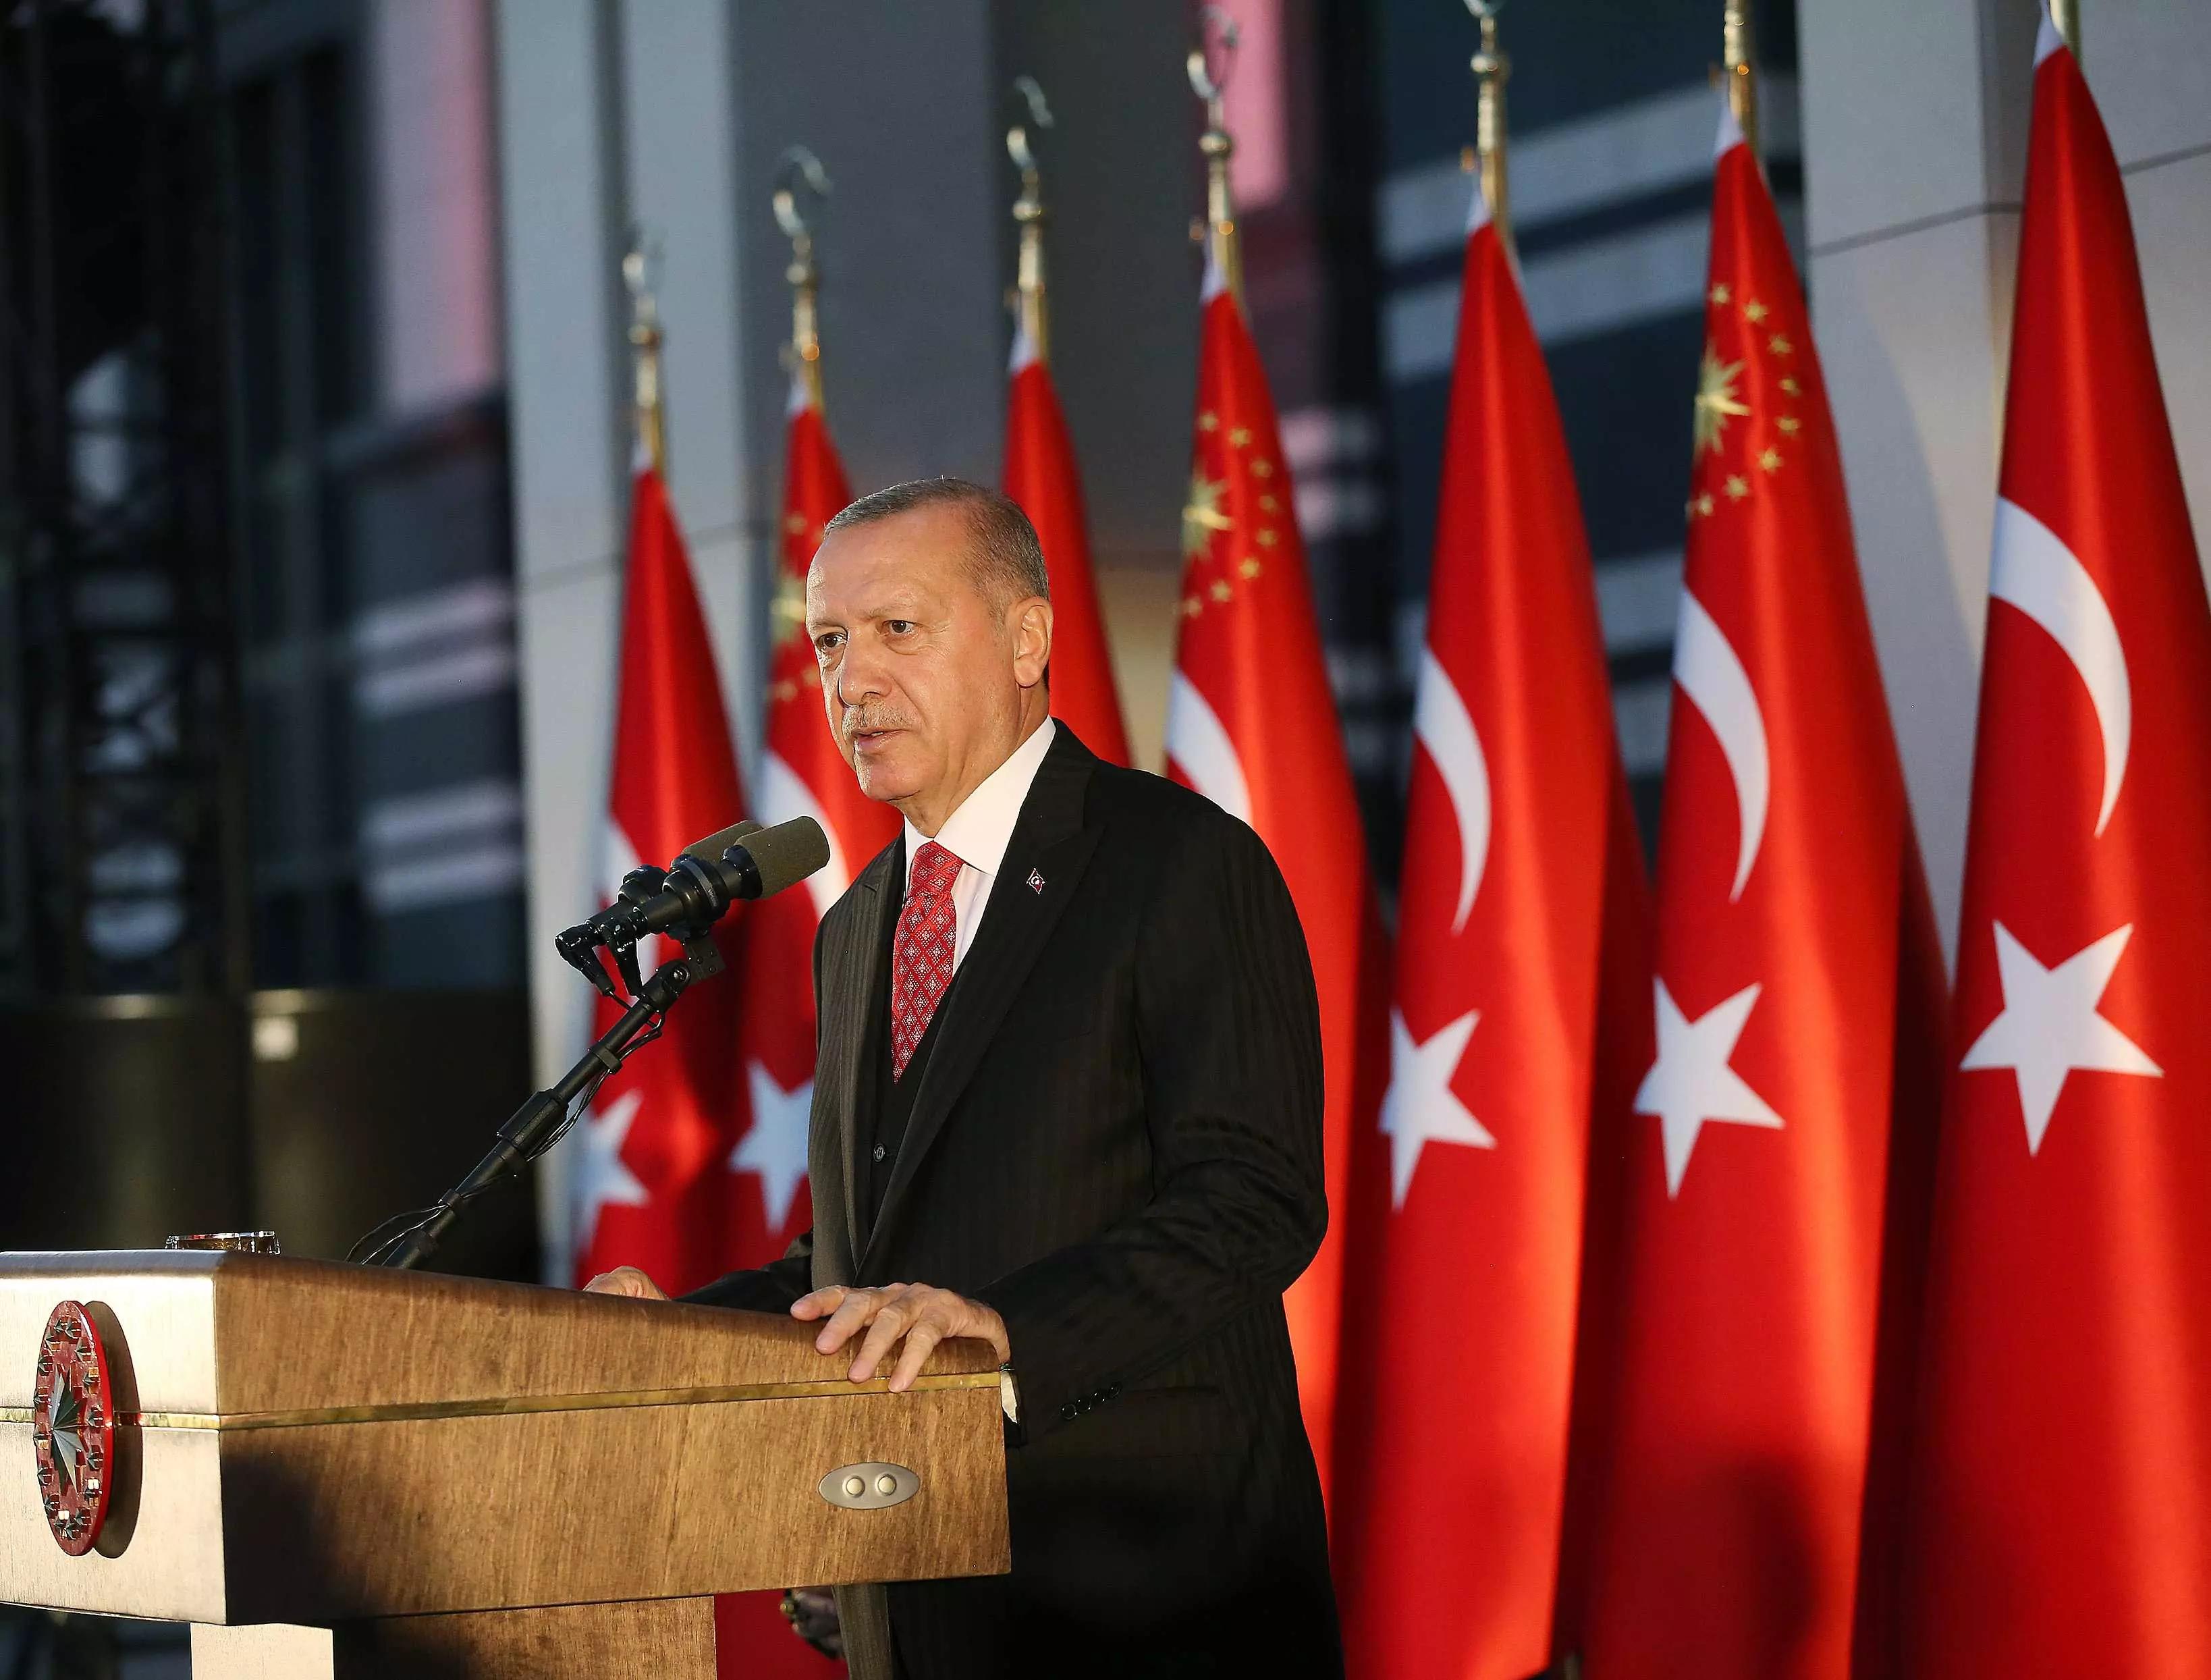 Devlet erkanı Ata'nın huzurunda! Cumhurbaşkanı Erdoğan'dan 'Çalışmaya devam' mesajı